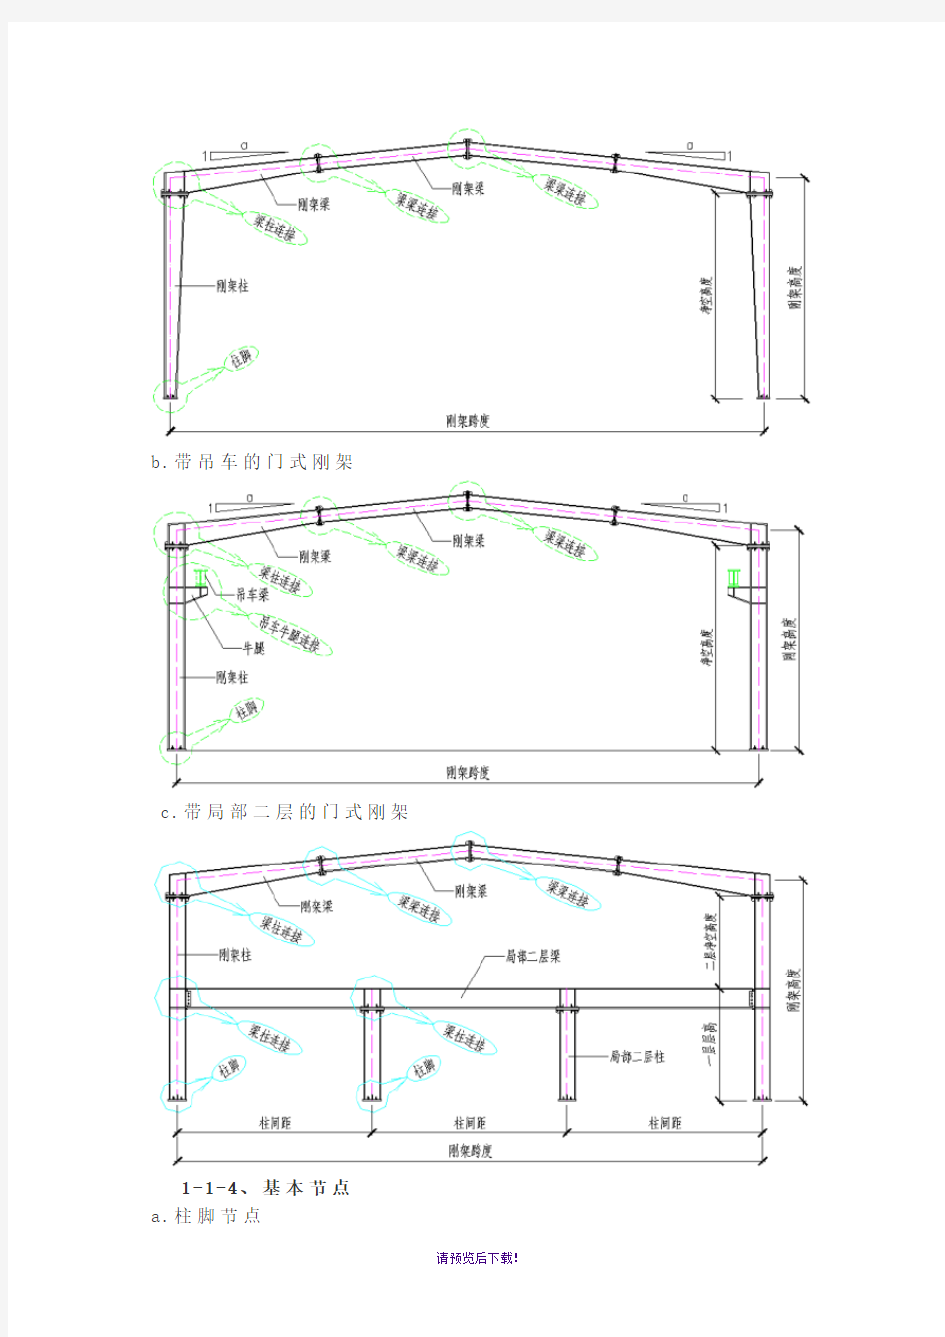 钢结构各构件及其做法的图解(图文)